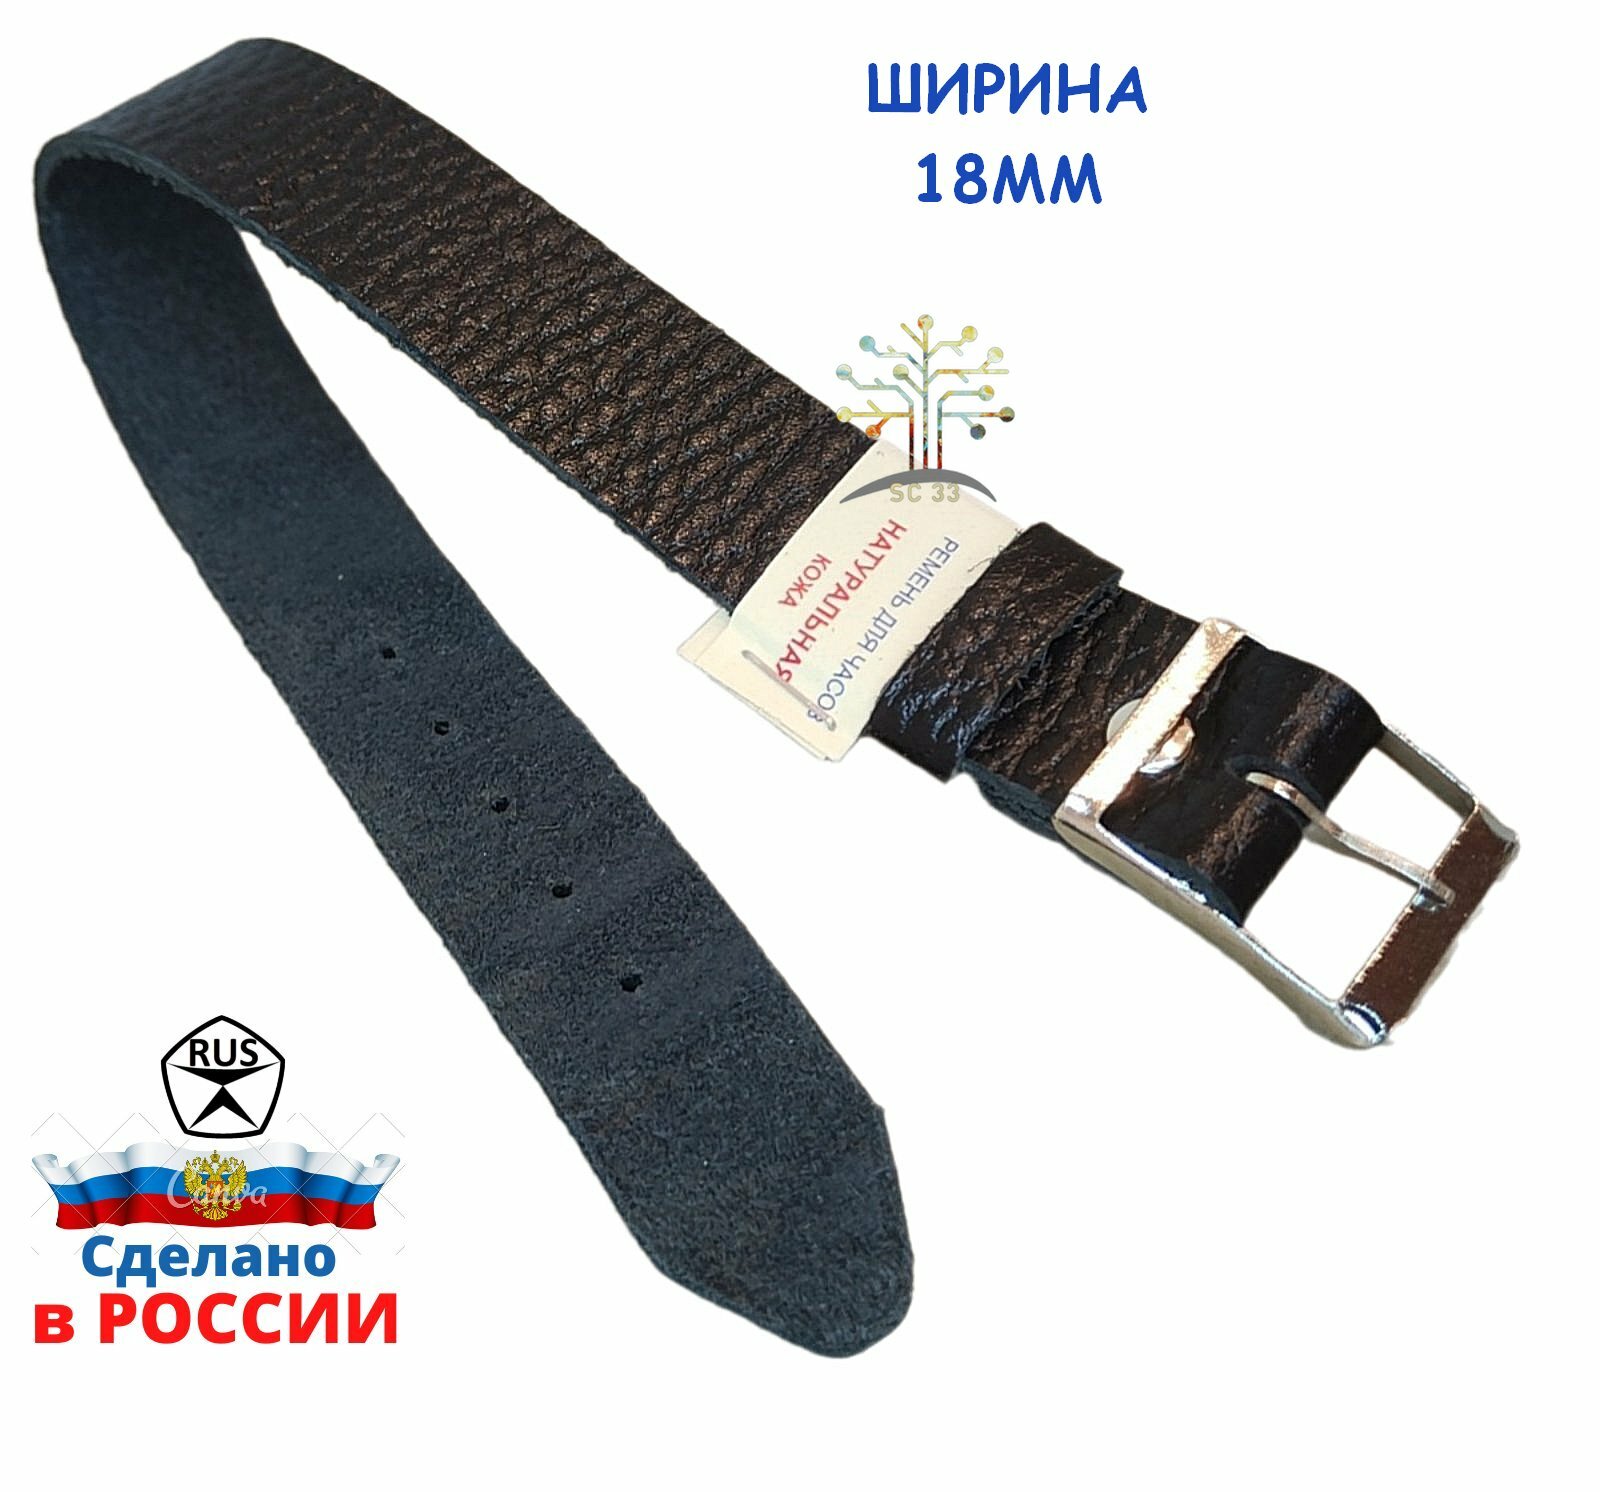 Ремень сплошной для наручных часов из натуральной кожи 18мм и 20мм производство Россия